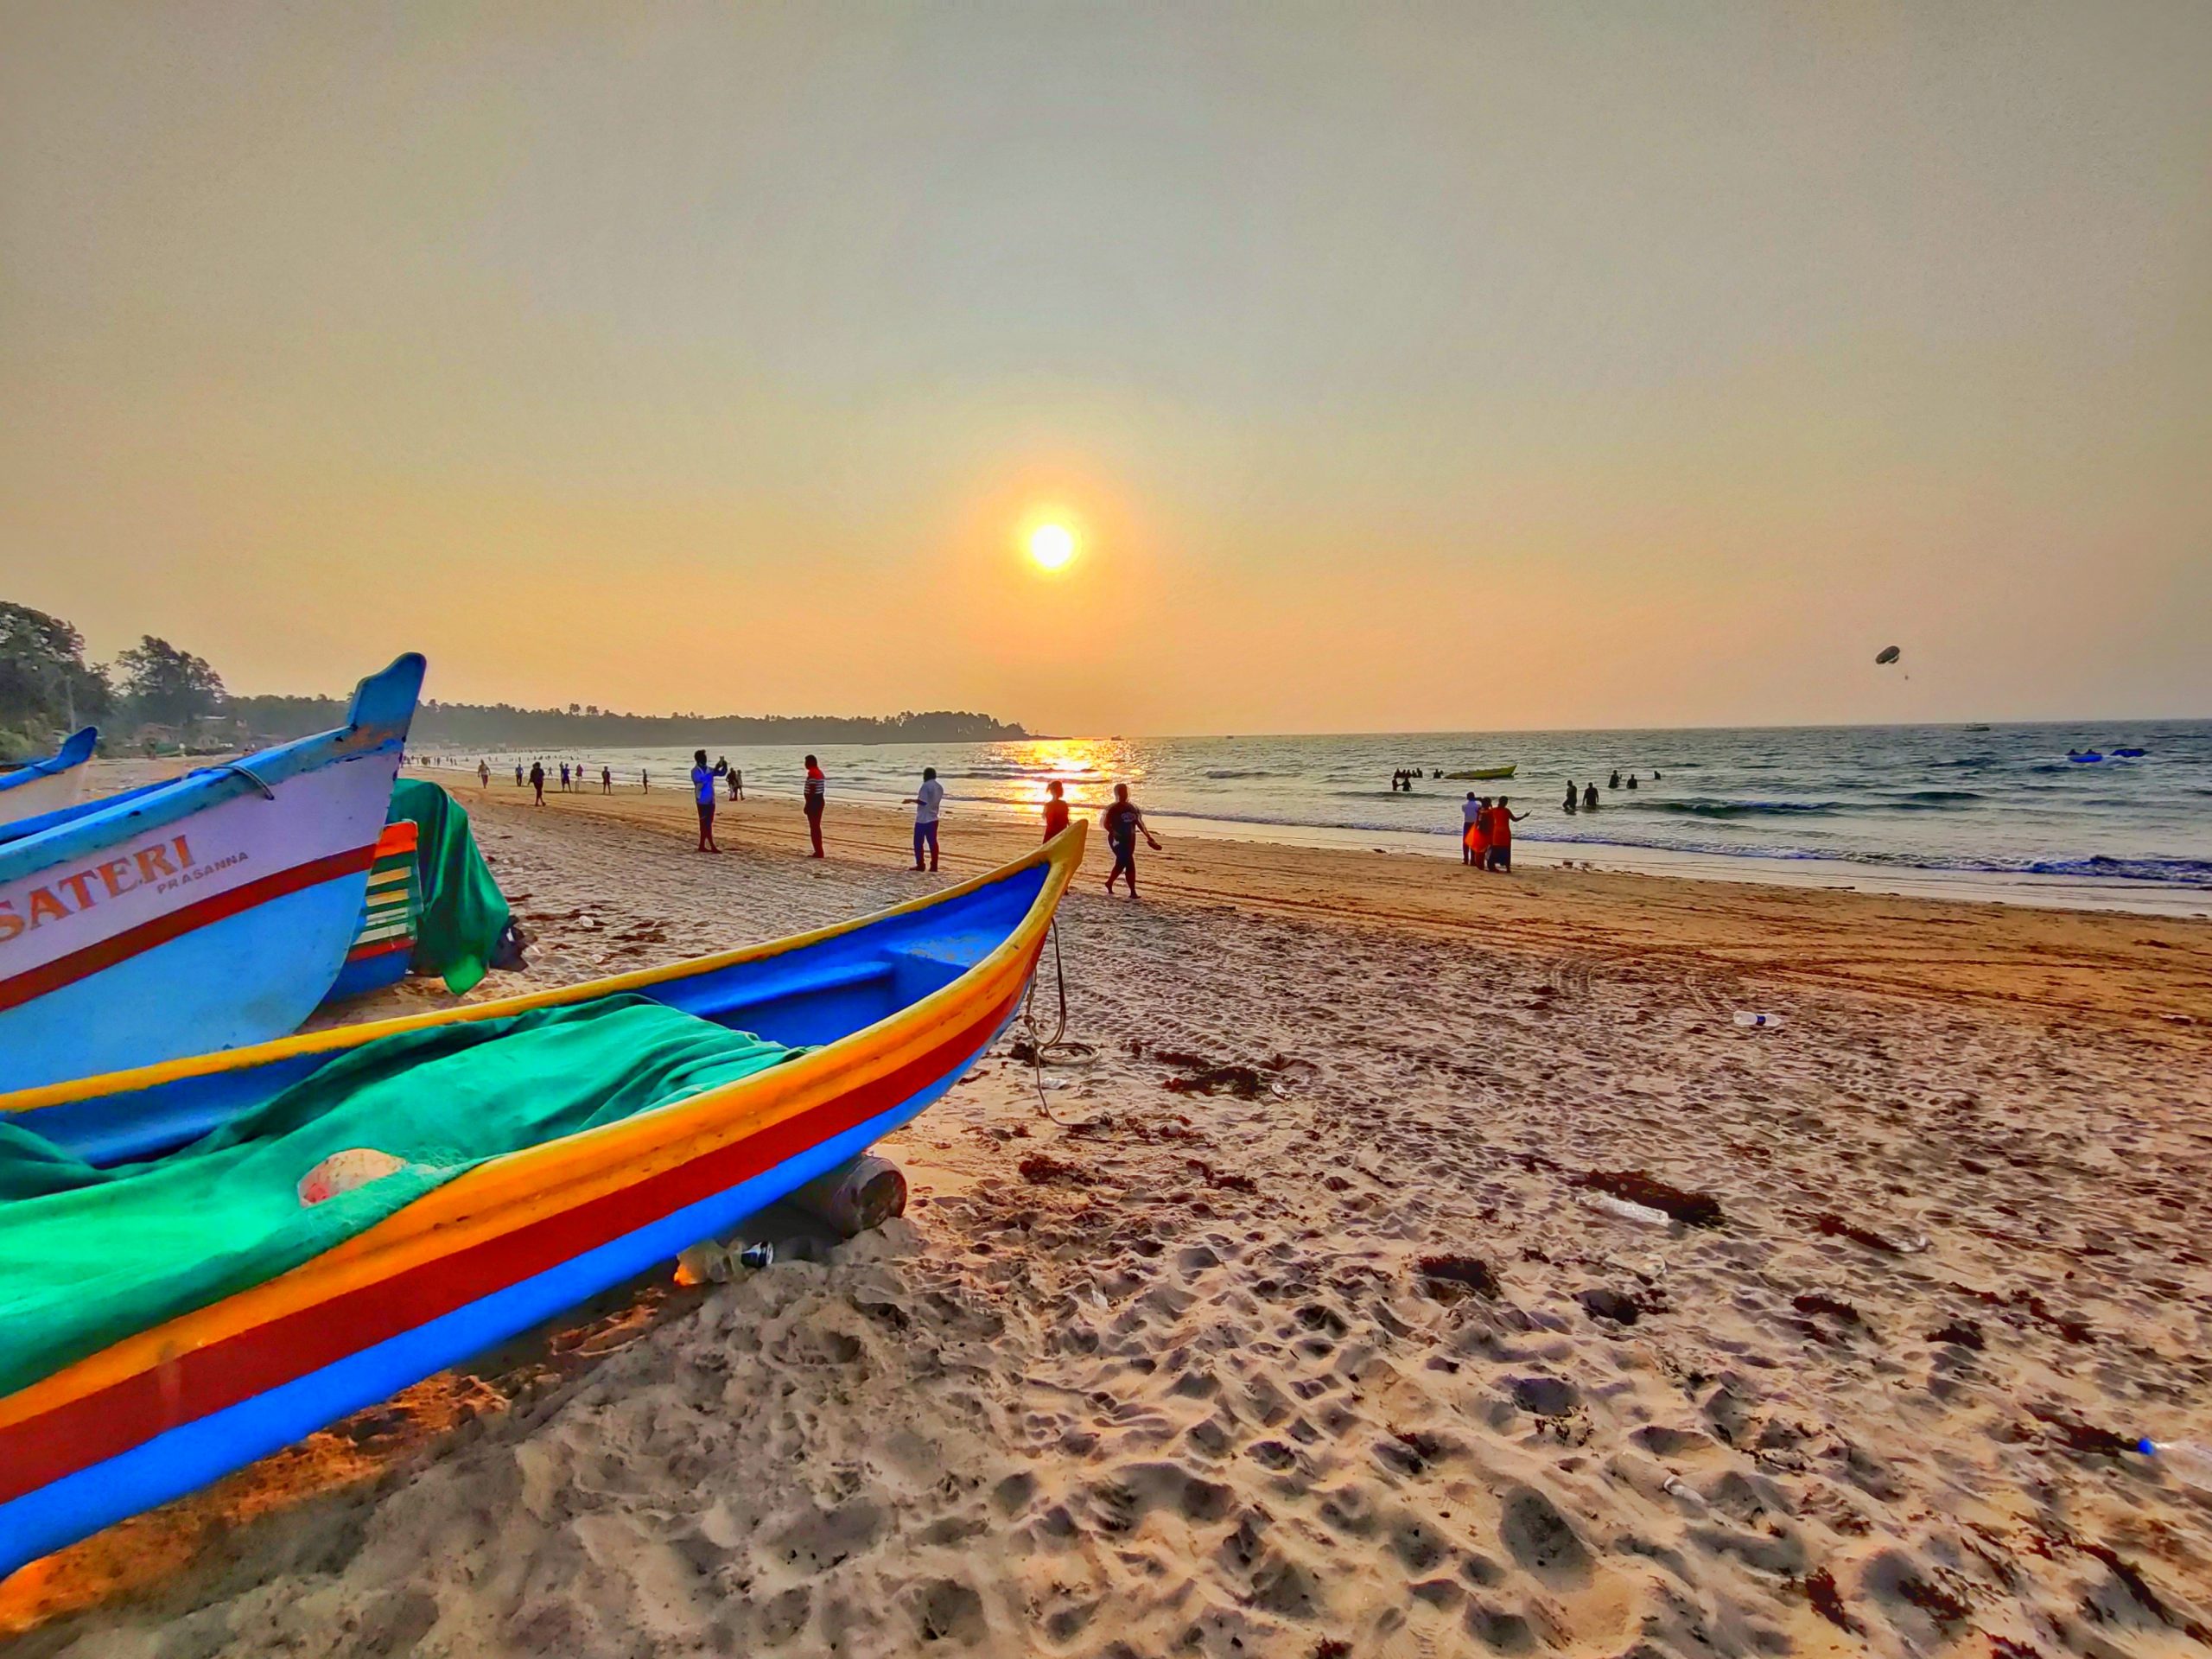 Dandi beach in Gujarat